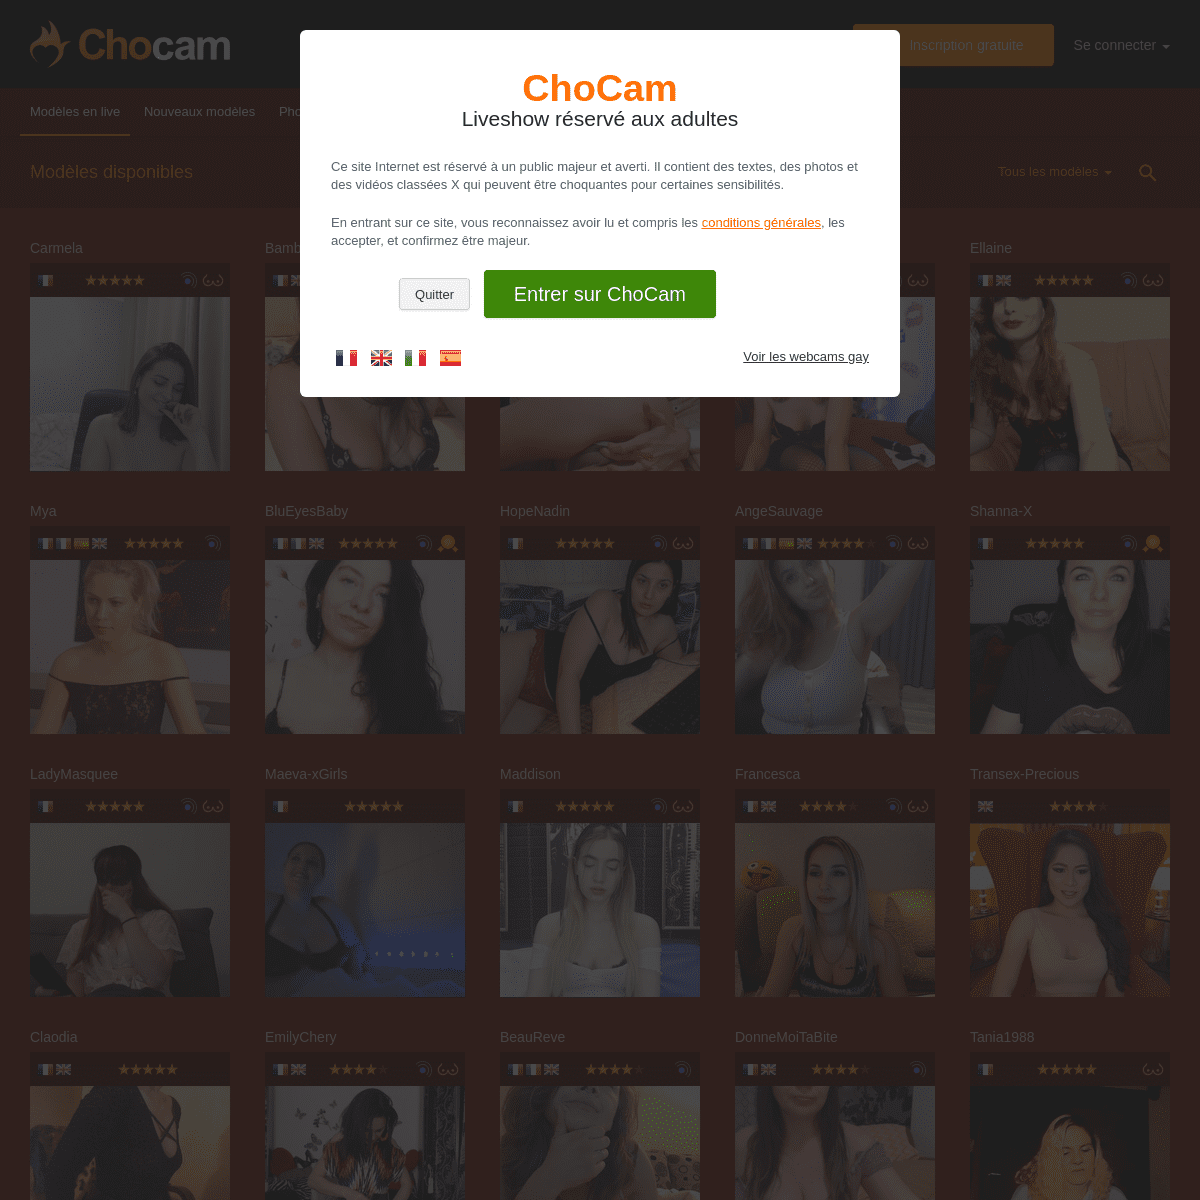 A complete backup of chocam.com